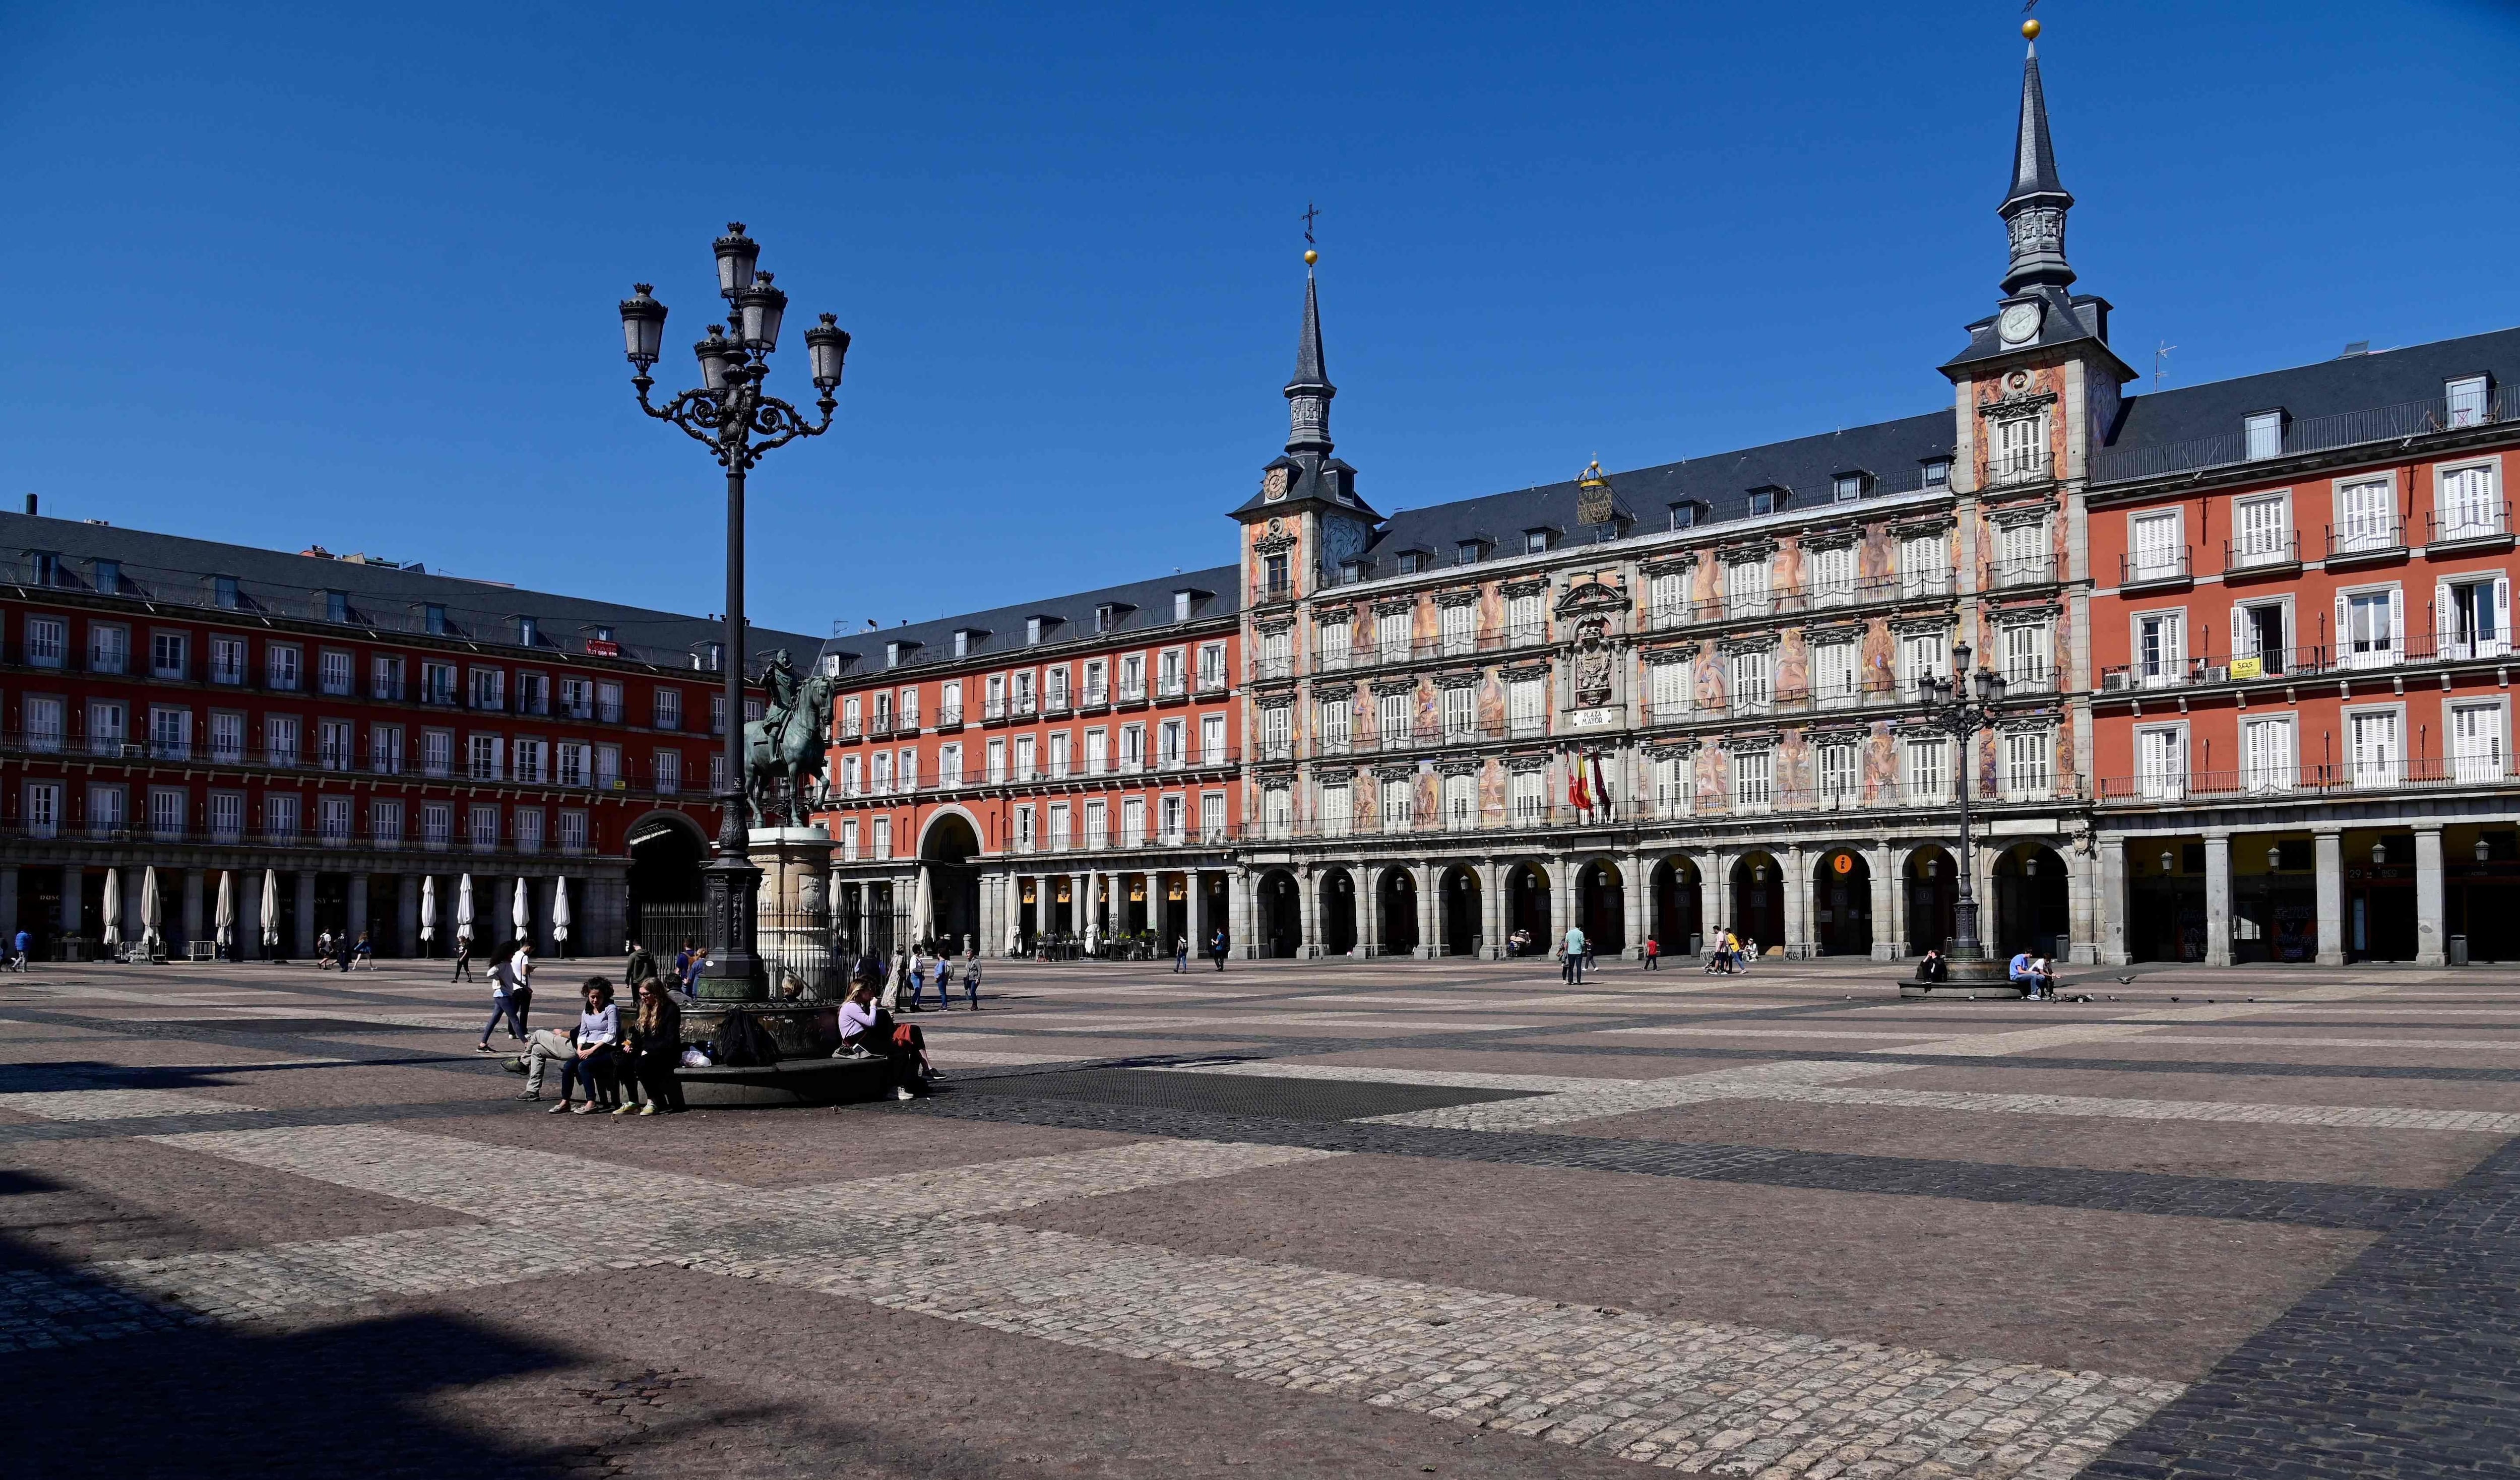 Pocas personas caminan en la Plaza Mayor de Madrid, generalmente abarrotada.Las autoridades regionales ordenaron cerrar todas las tiendas desde hoy hasta el 26 de marzo, a excepción de los que venden alimentos, químicos y estaciones de servicio, para frenar propagación del coronavirus. (AFP / JAVIER SORIANO).